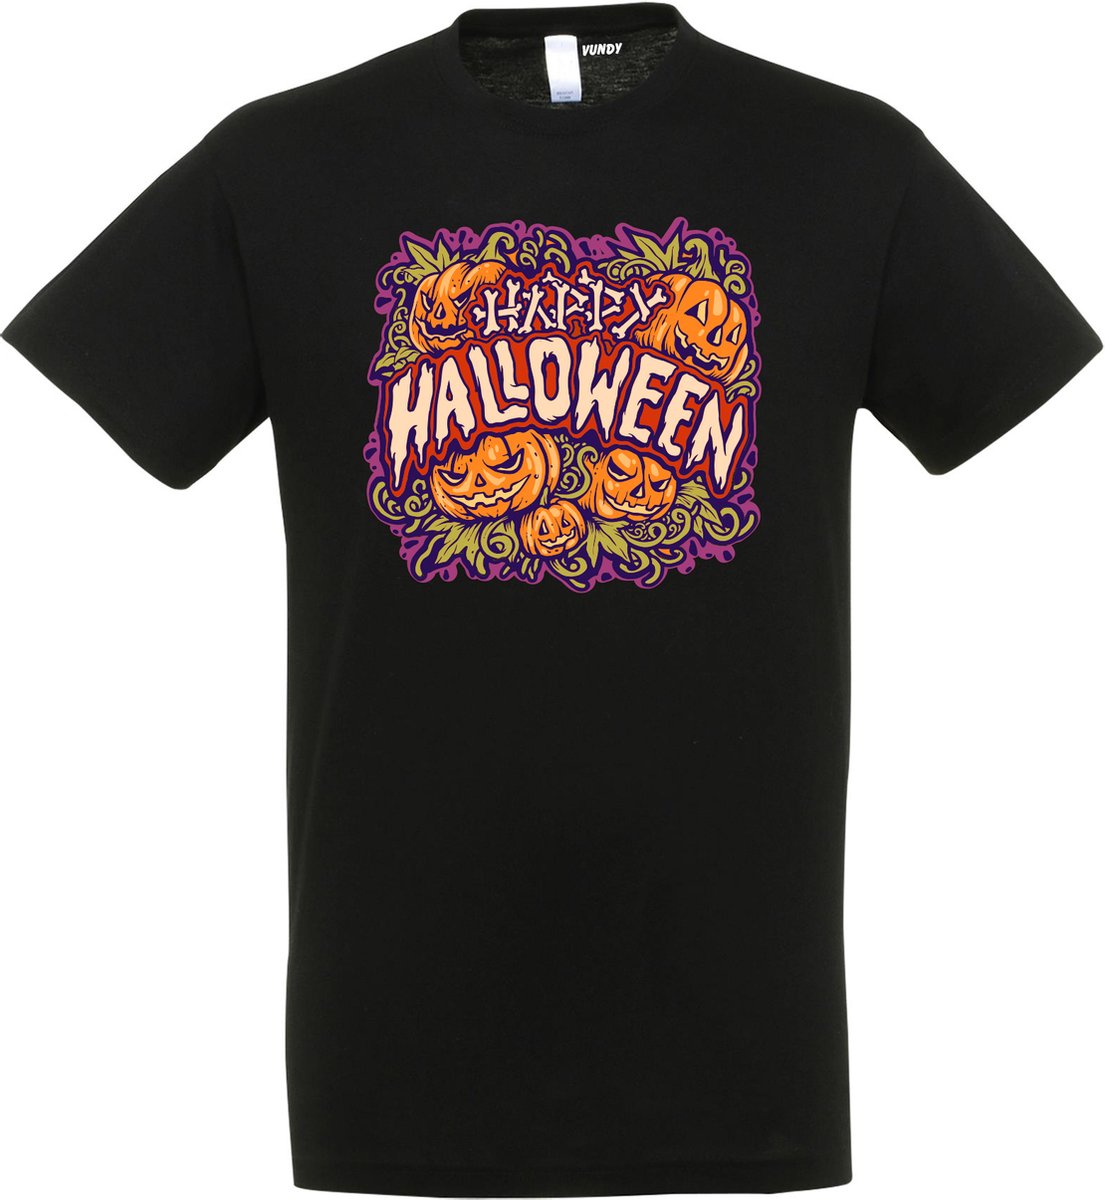 T-shirt Happy Halloween pompoen | Halloween kostuum kind dames heren | verkleedkleren meisje jongen | Zwart | maat XXL